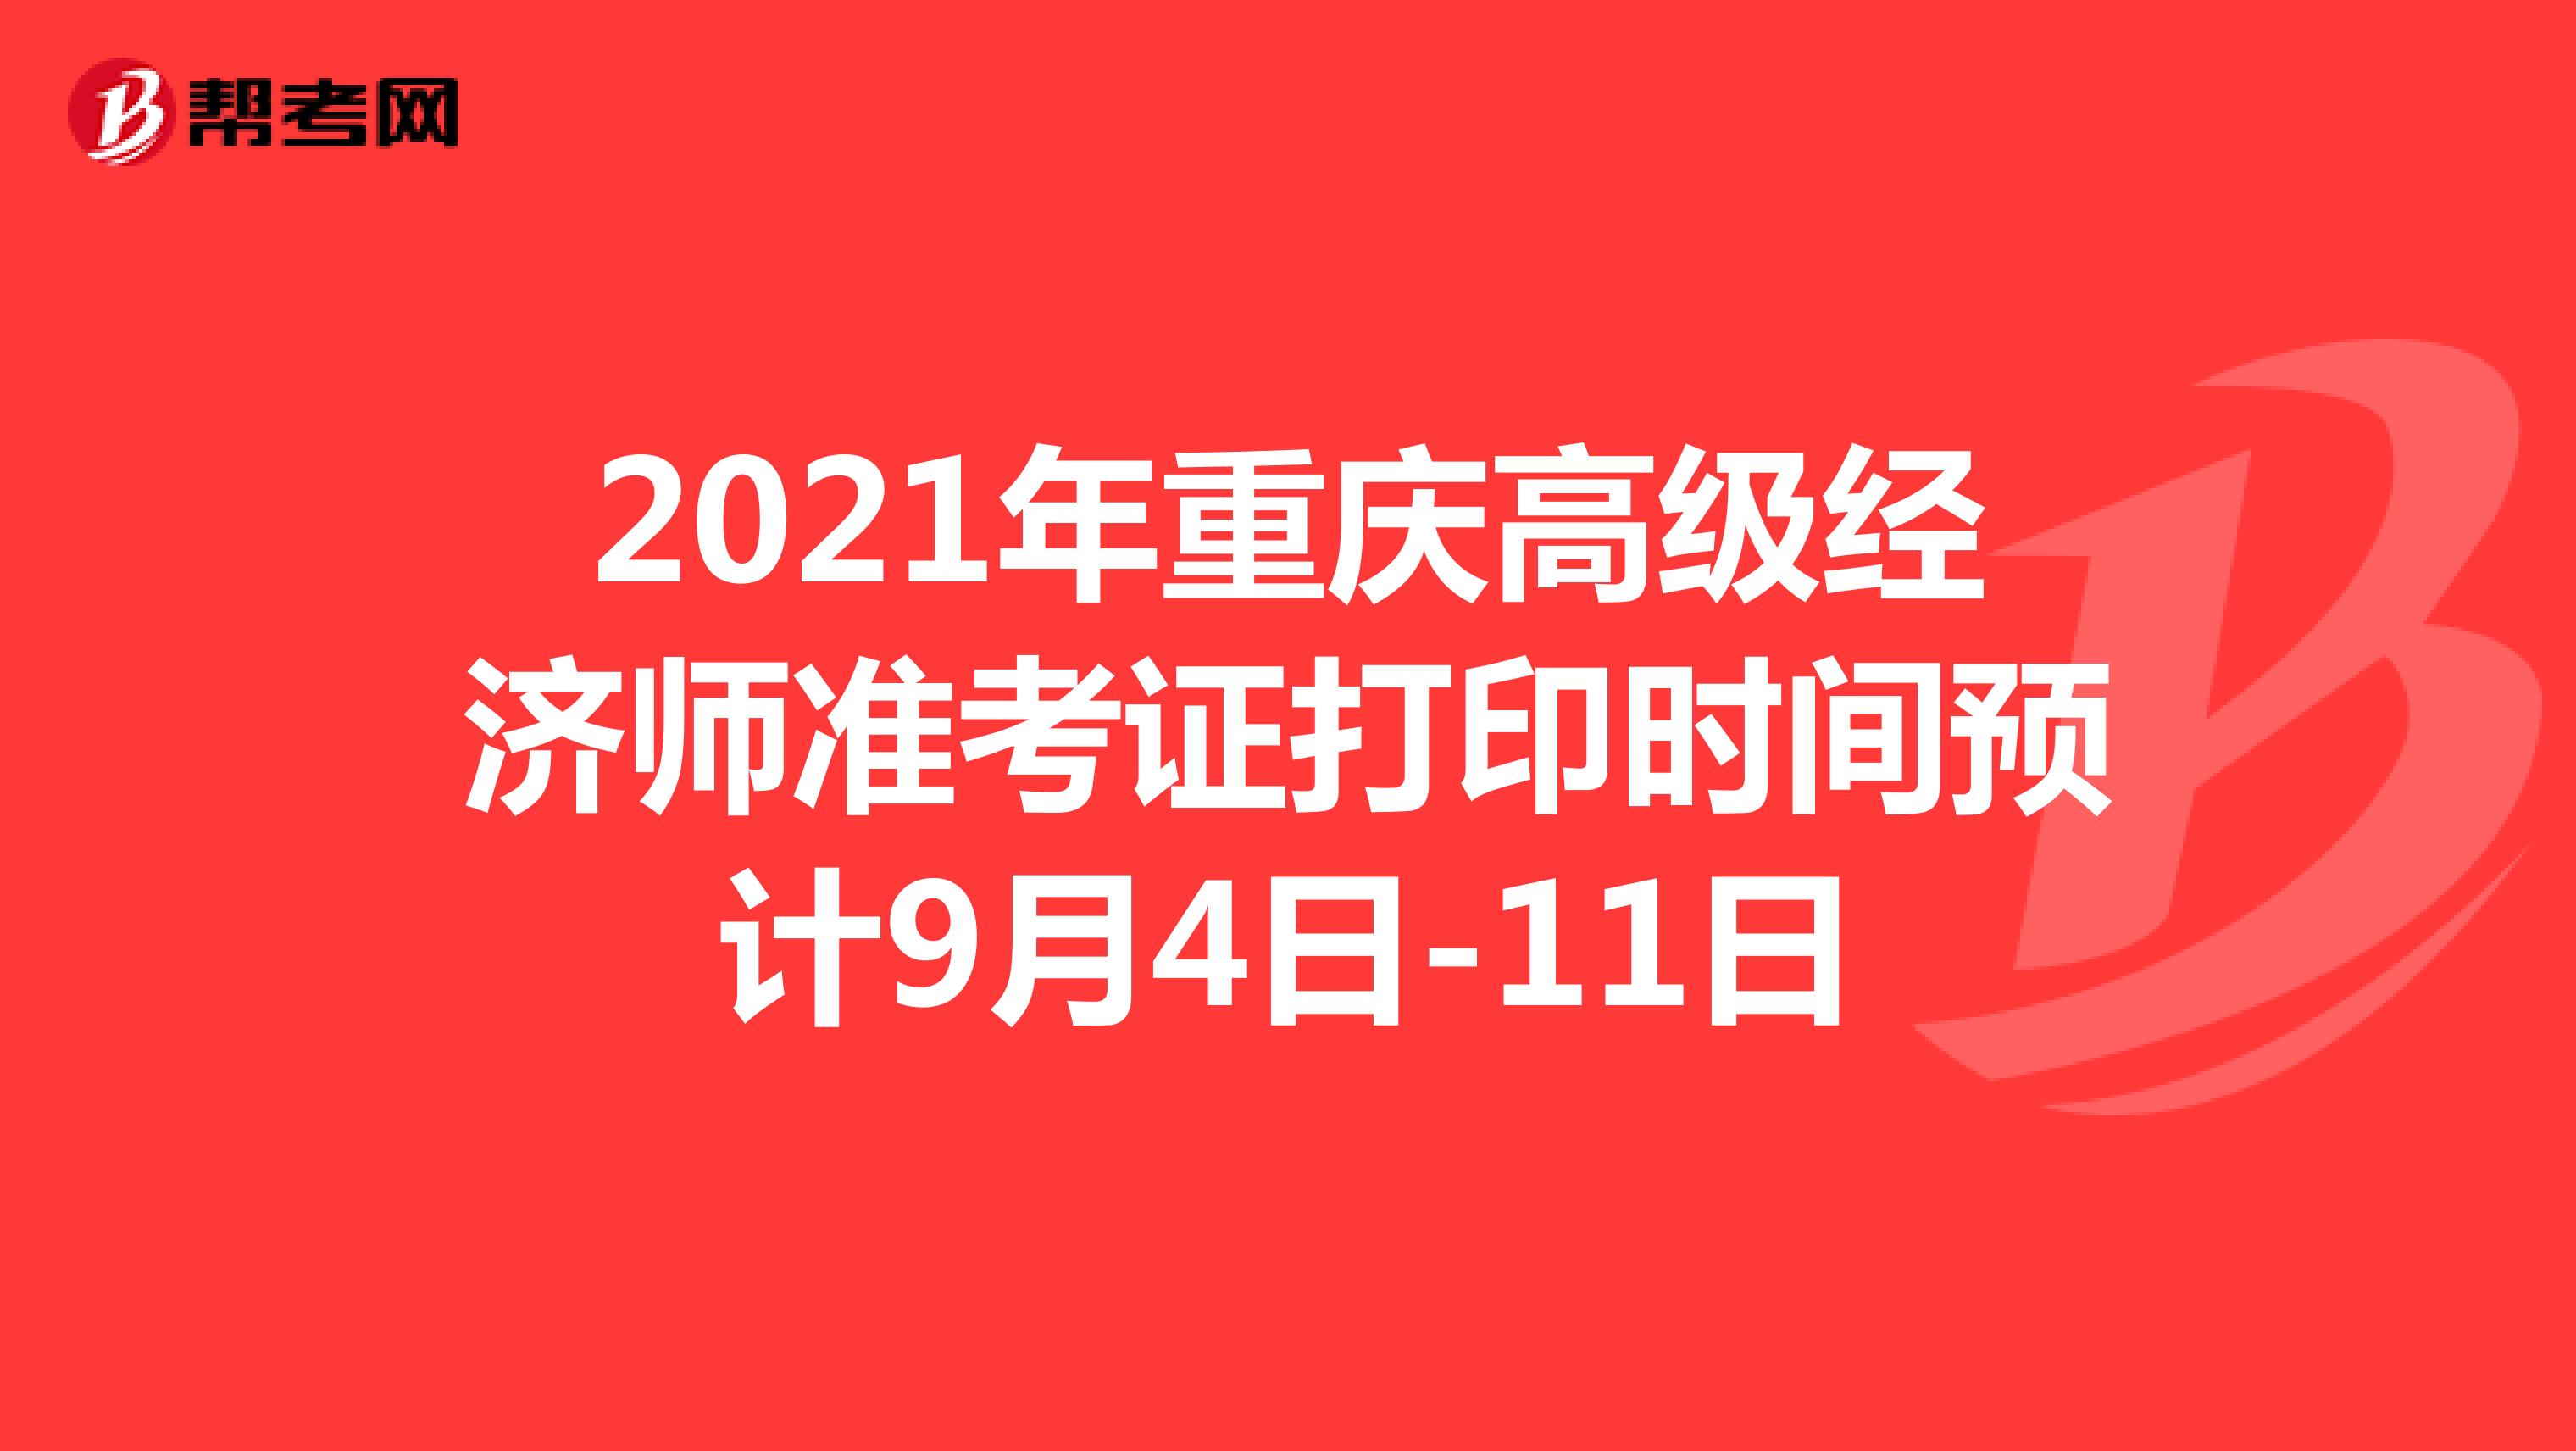 2021年重庆高级经济师准考证打印时间预计9月4日-11日